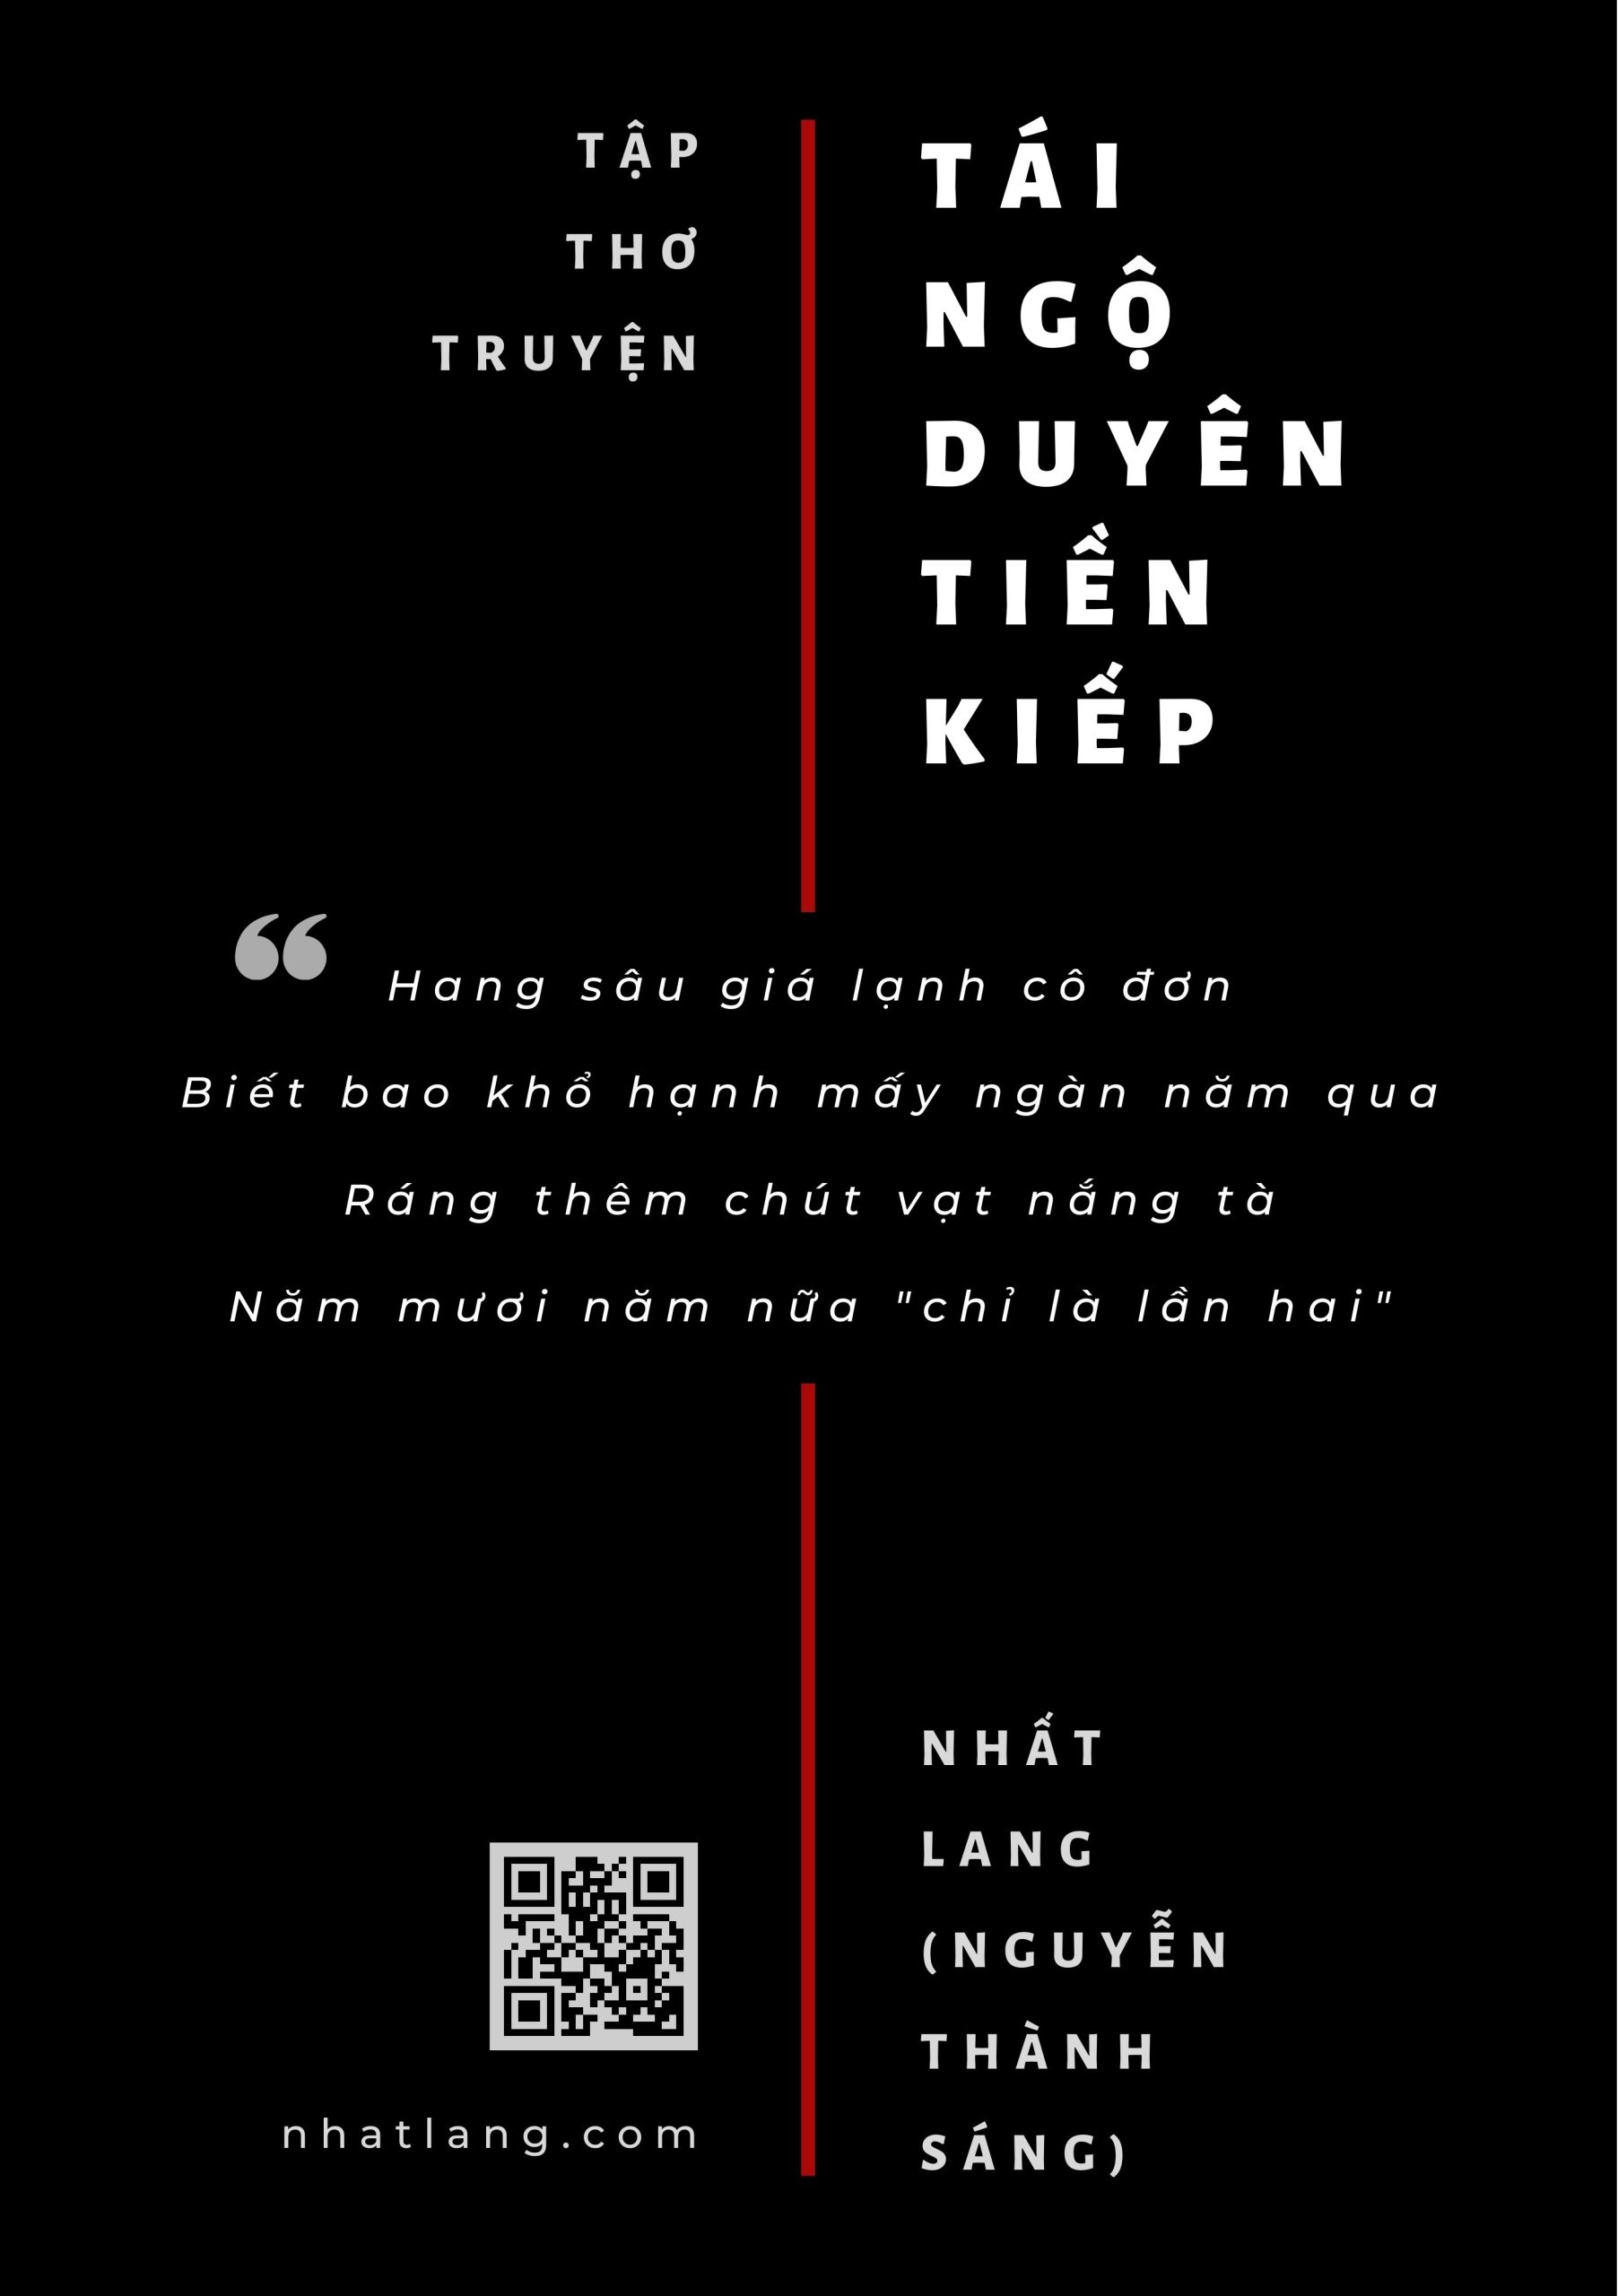 book cover- Tái Ngộ Duyên Tiền Kiếp nhatlang.com (A5 Document)